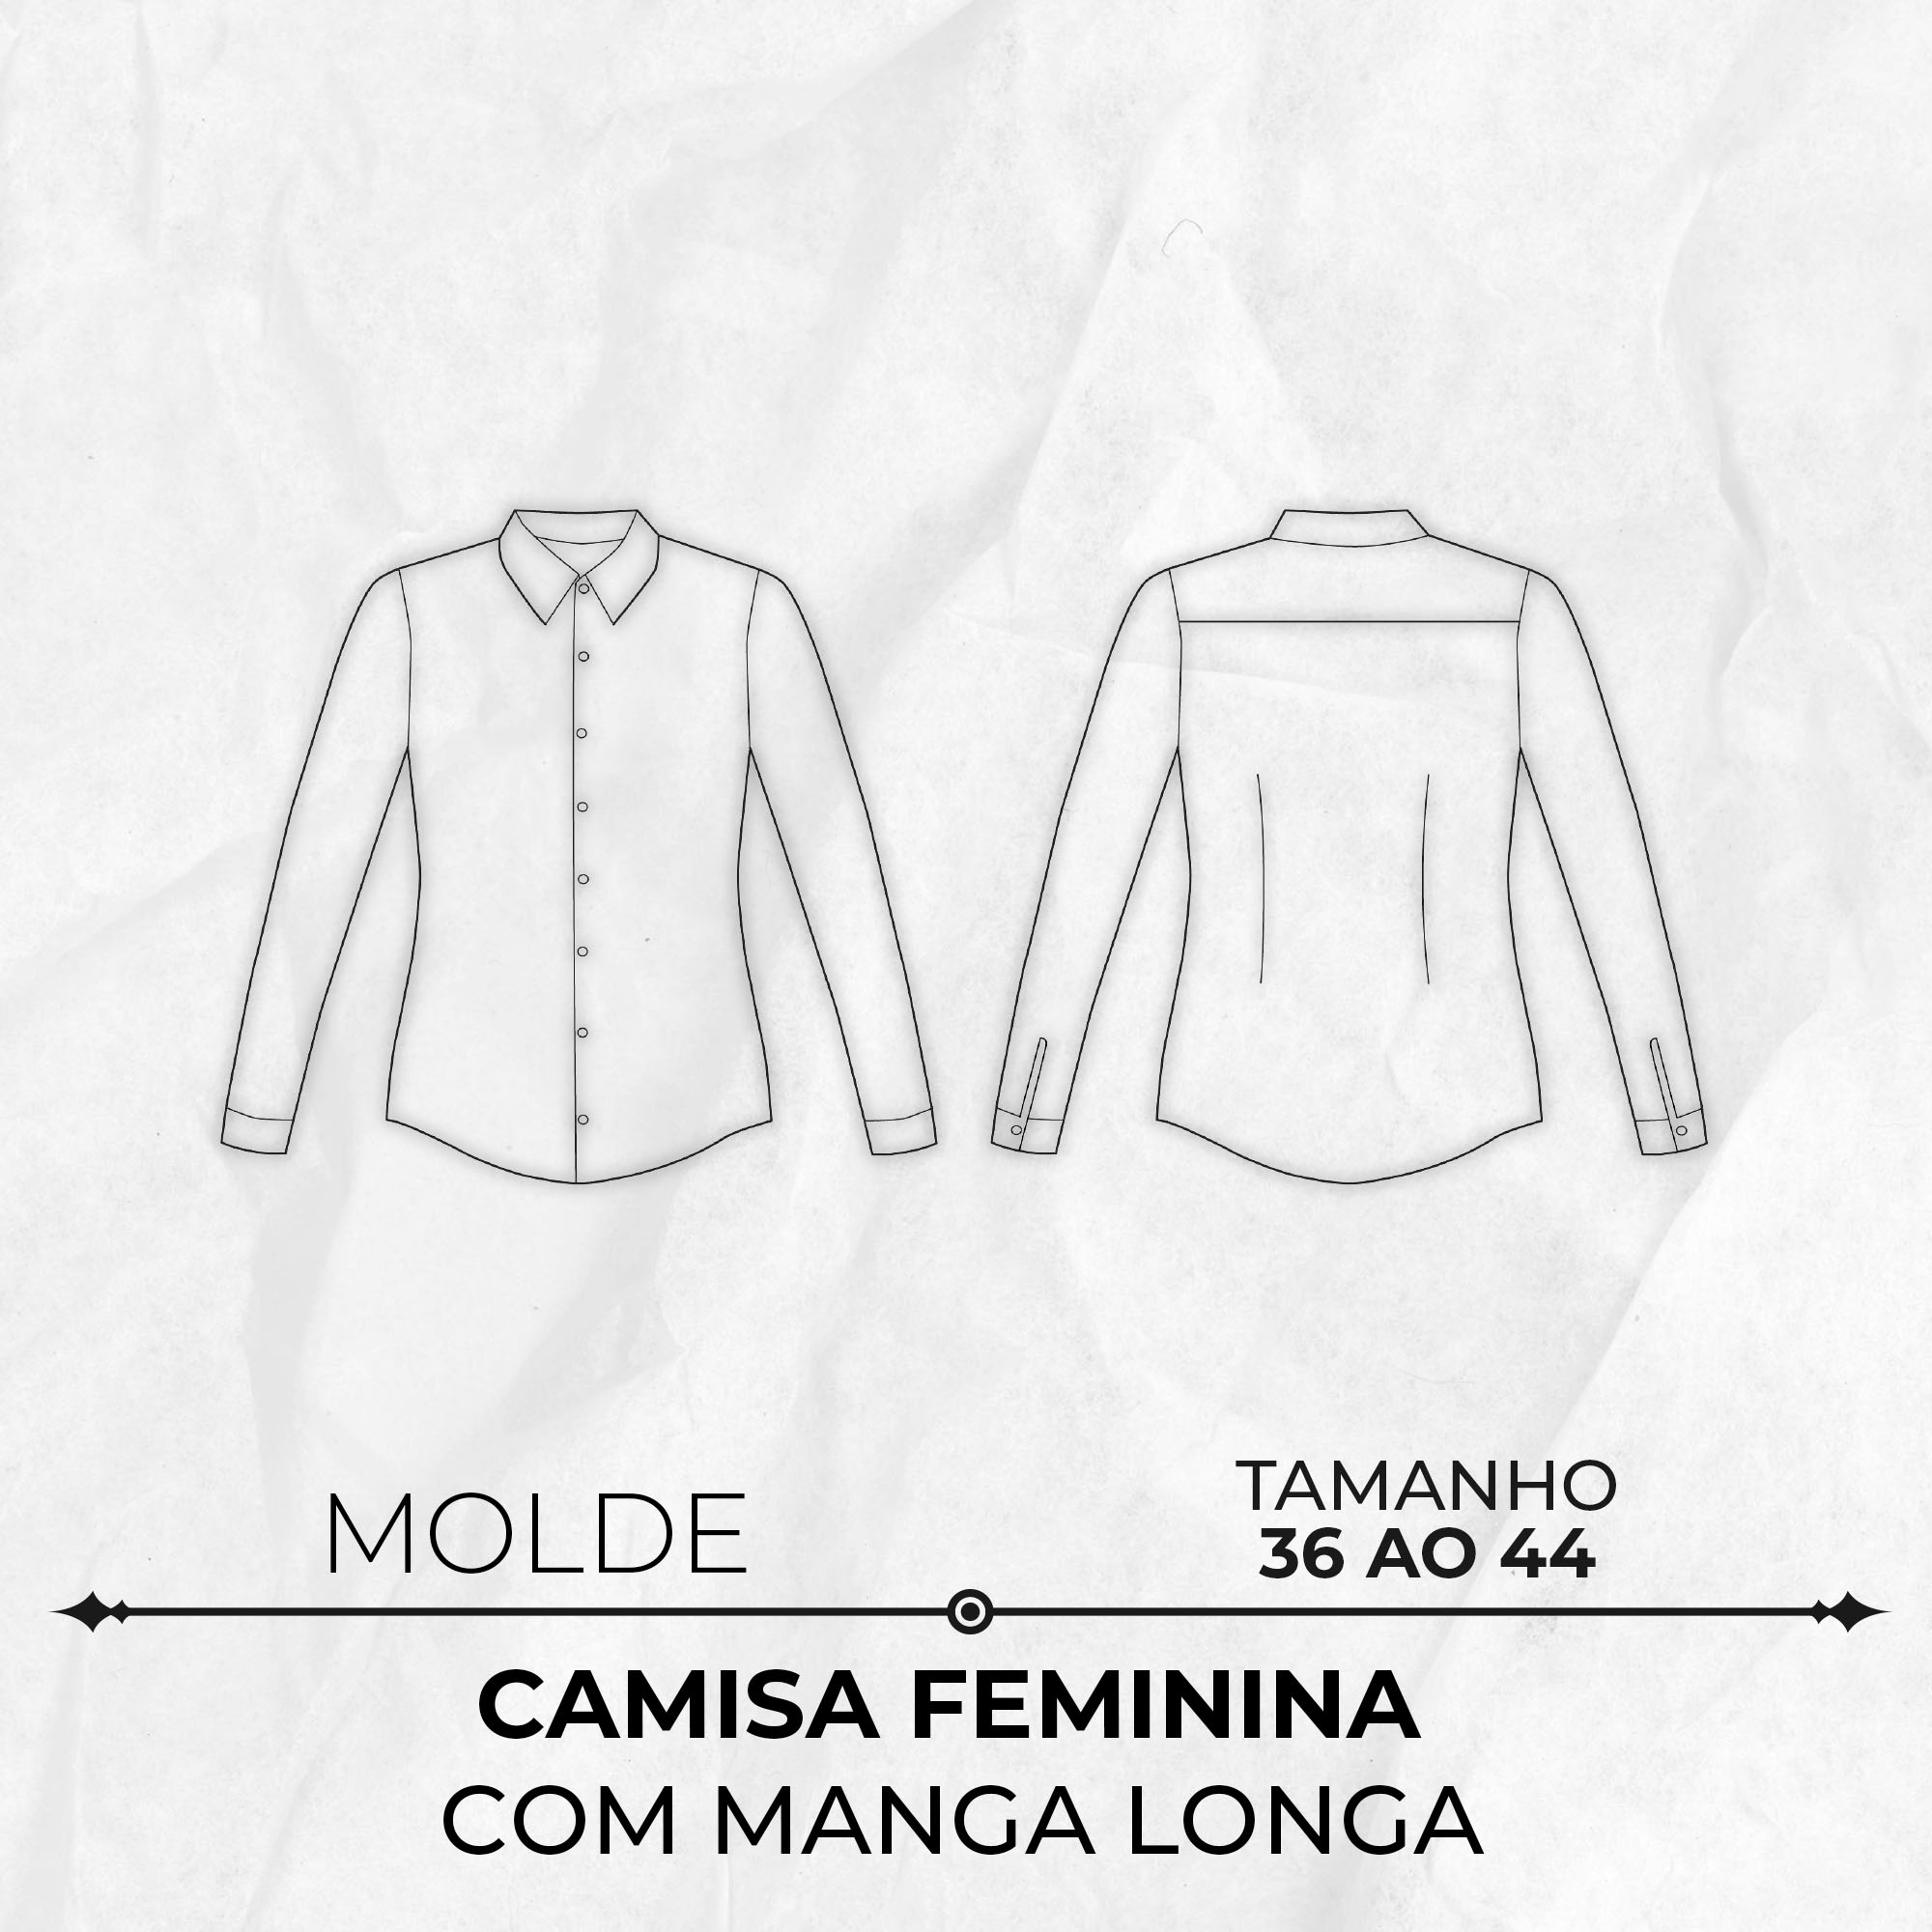 Molde camisa feminina manga longa tamanho 36 ao 44 by Wania Machado